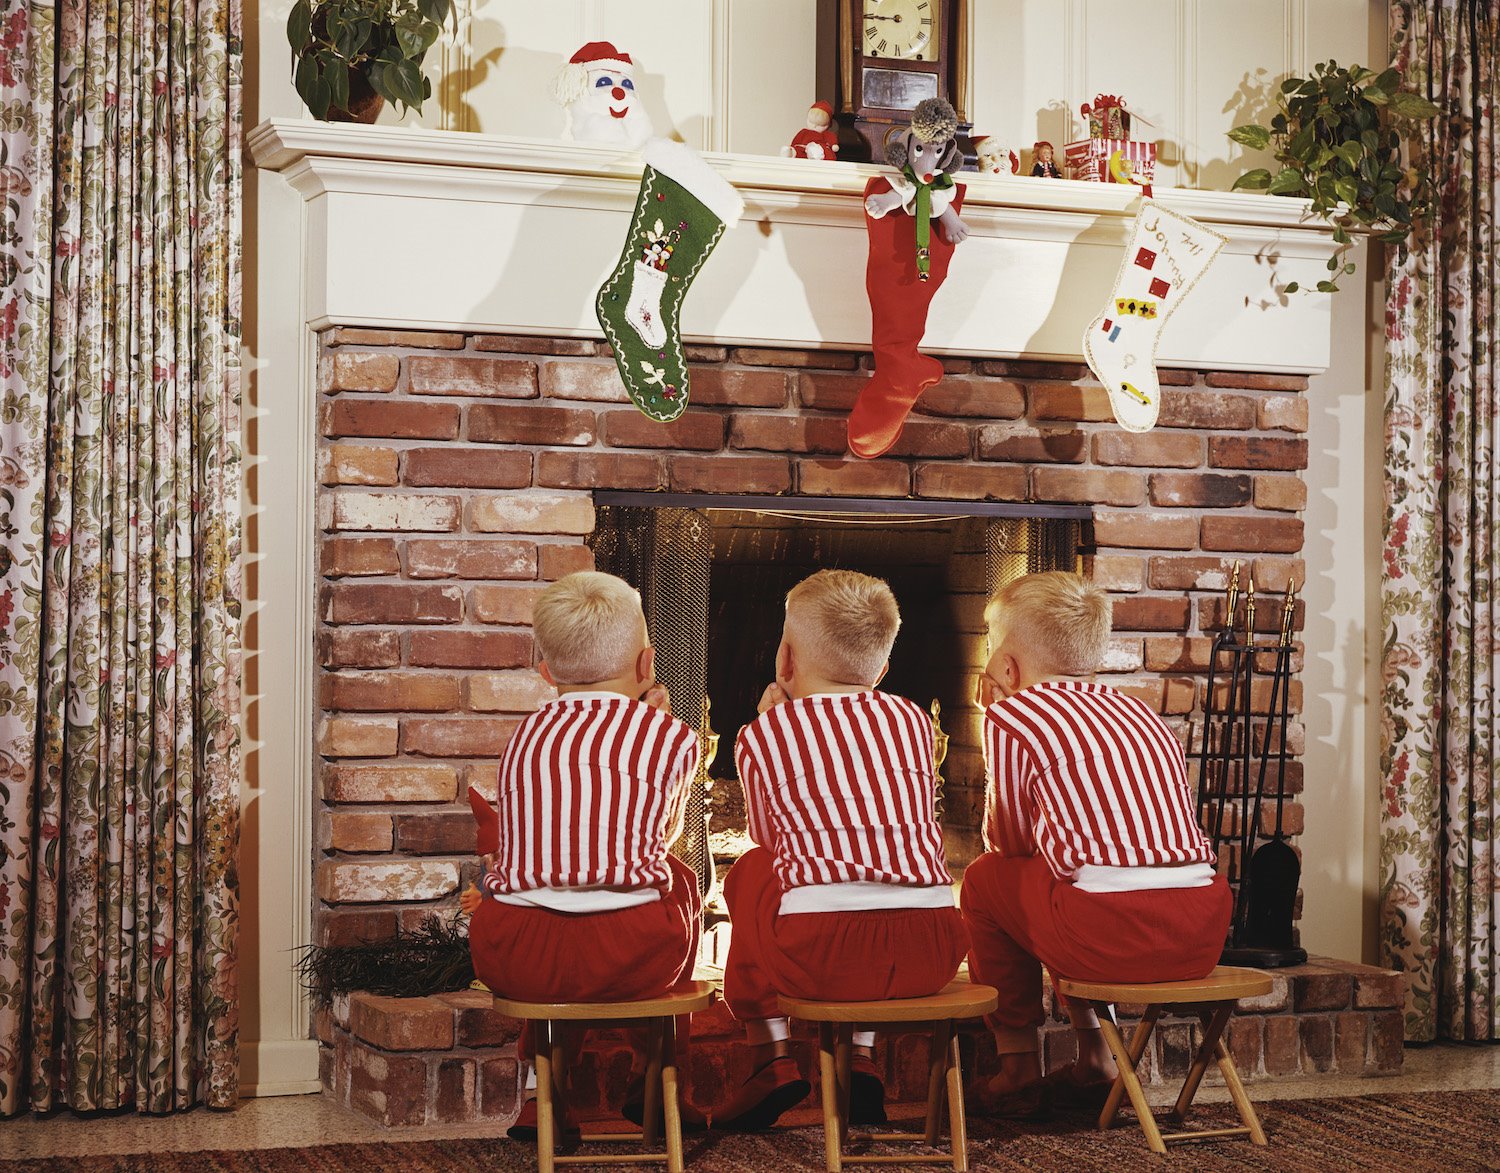 Niños frente a una chimenea en Navidad vestidos iguales. 1968